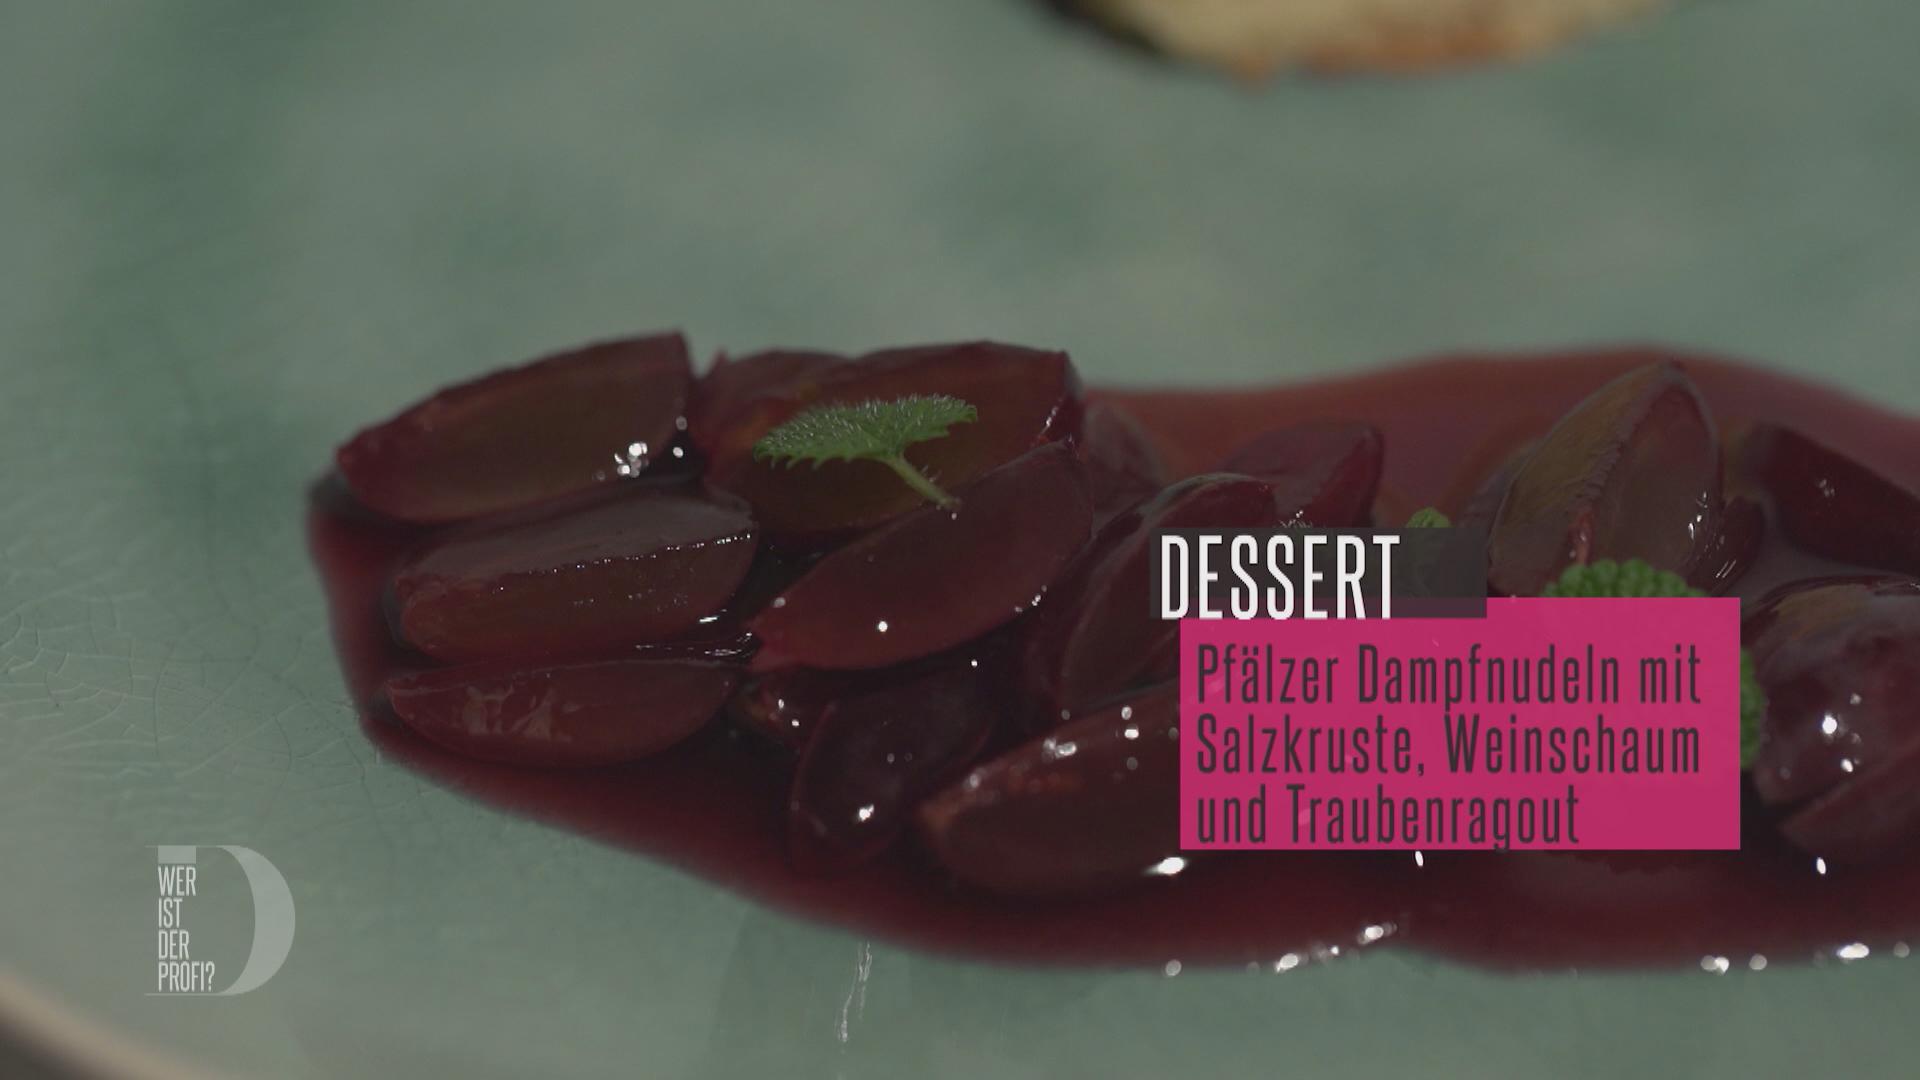 Pfälzer Dampfnudeln mit Salzkruste, Weinschaum und Traubenragout -
Rezept Eingereicht von Das perfekte Dinner